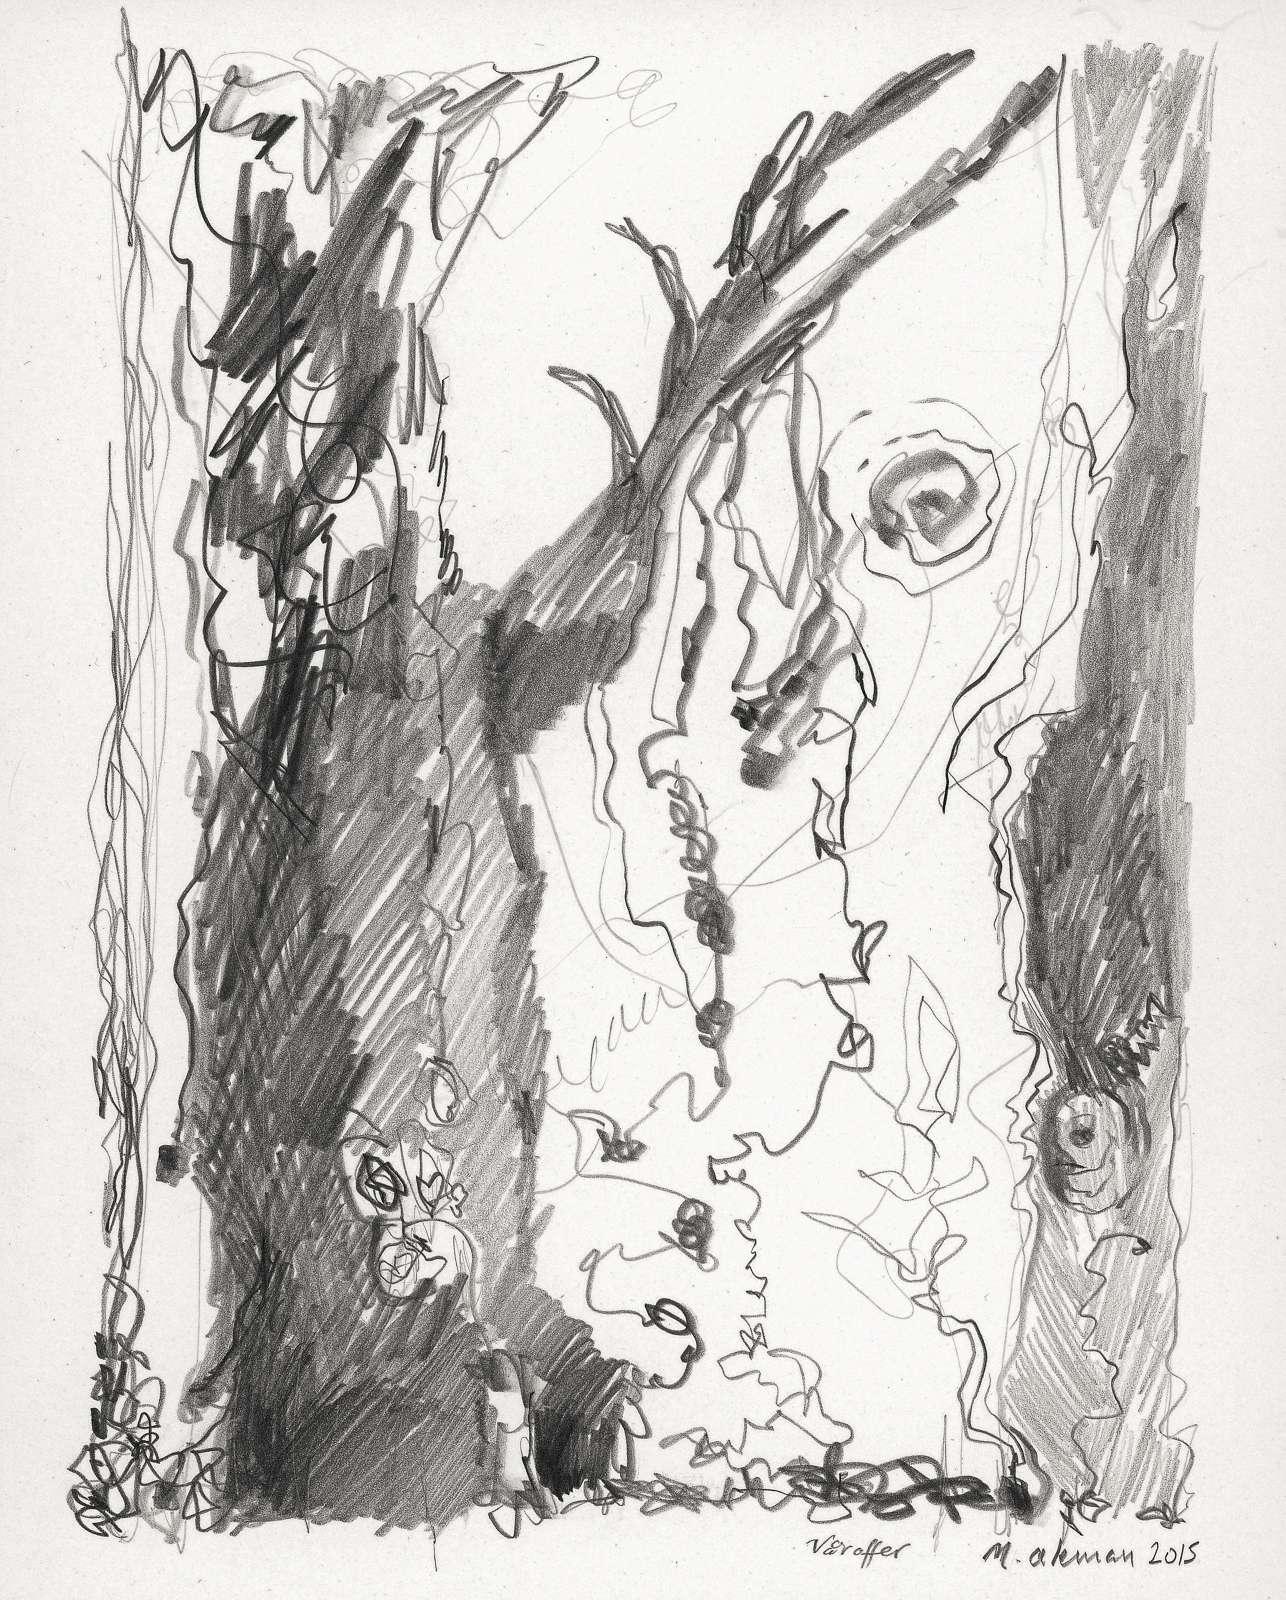 Våroffer, pencil on paper, 31 x 23 cm